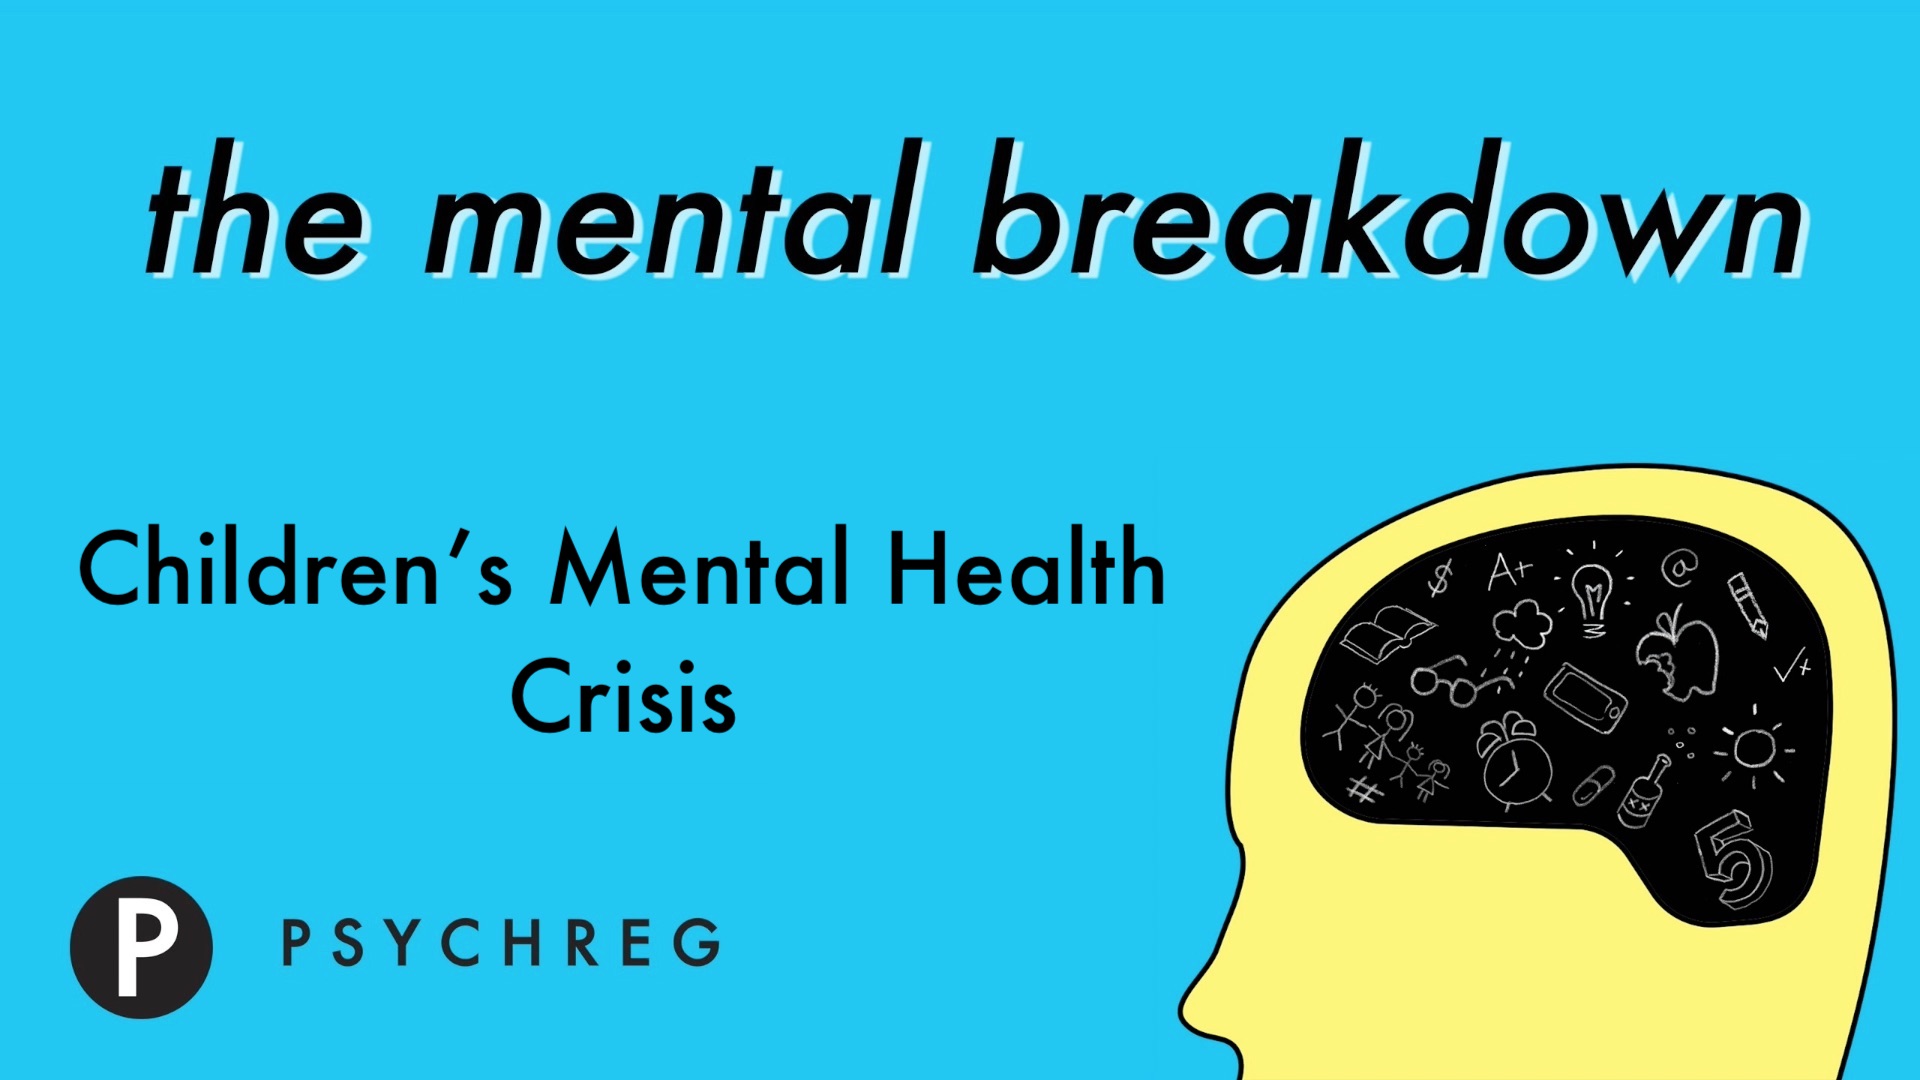 Children's Mental Health Crisis - The Mental Breakdown